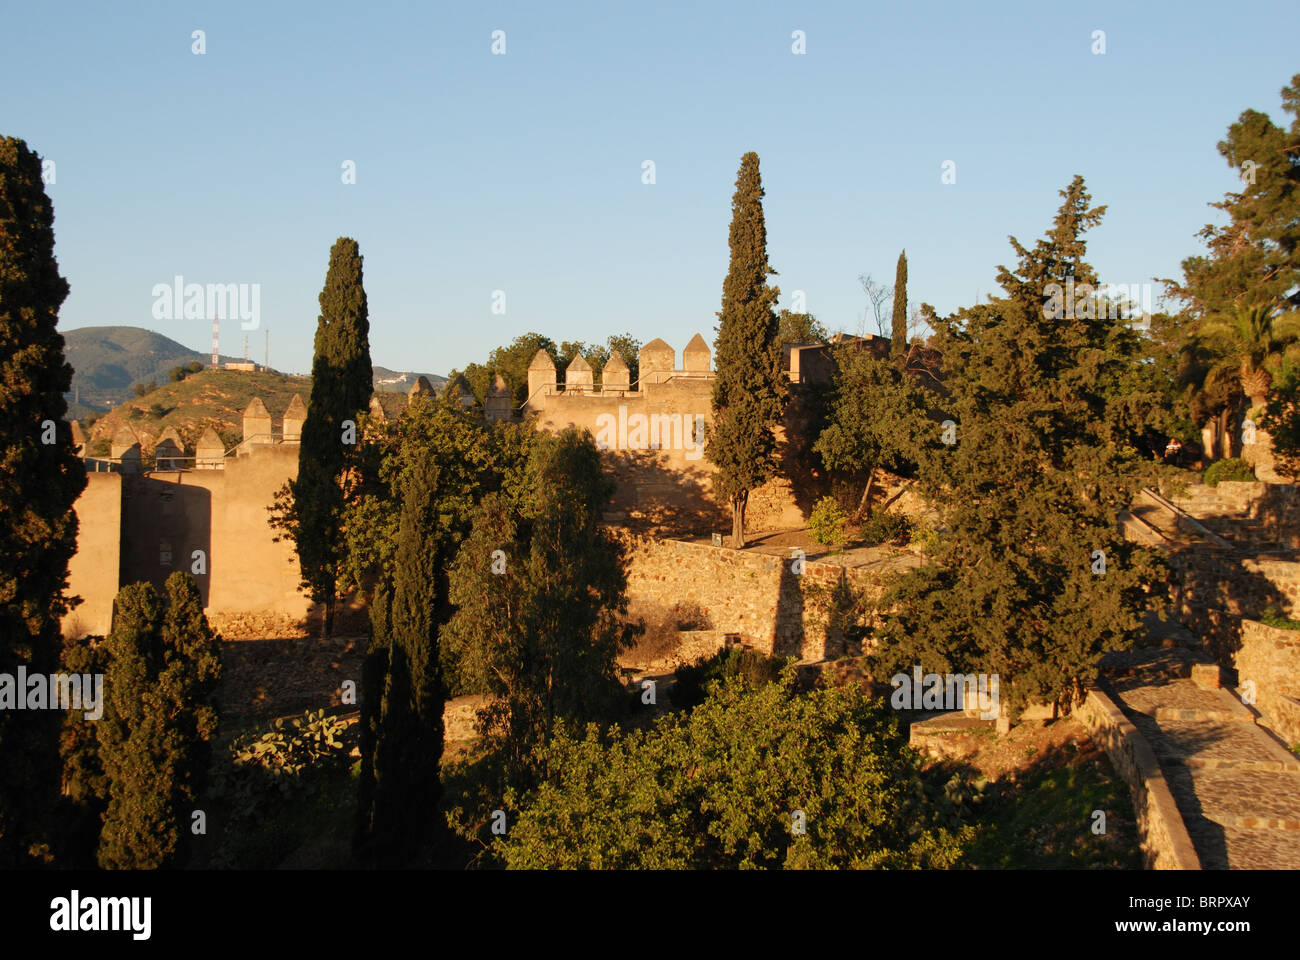 Le merlature e giardini, castello di Gibralfaro, Malaga, Costa del Sol, provincia di Malaga, Andalusia, Spagna, Europa occidentale. Foto Stock